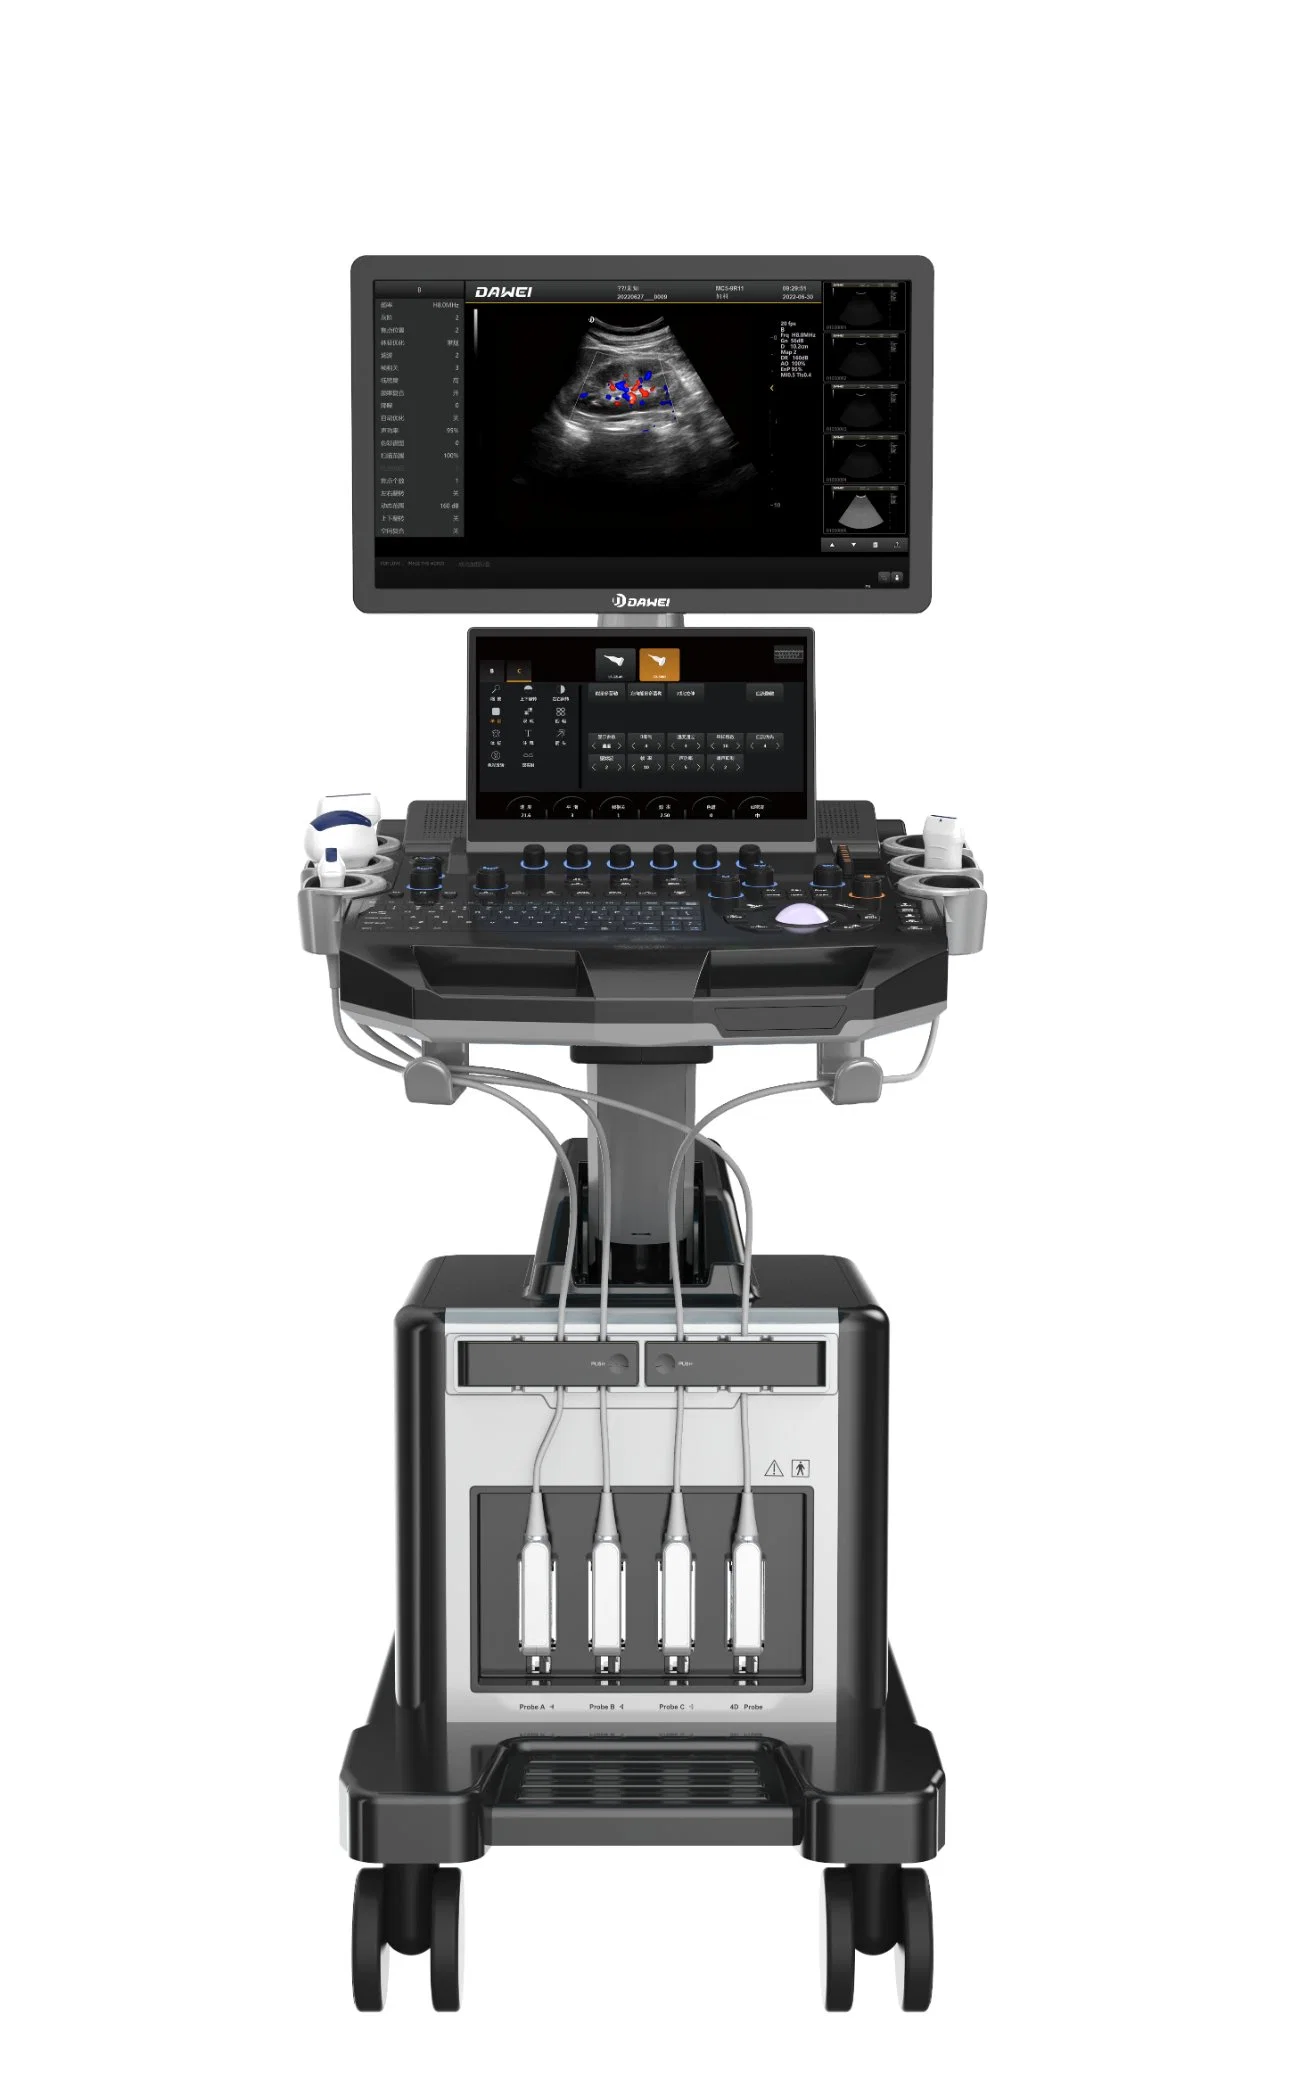 4D Clear Image Trolley Typ Dwt30 Farbdoppler-Ultraschallgerät Für Frauen Gesundheit mit 4D Sonde